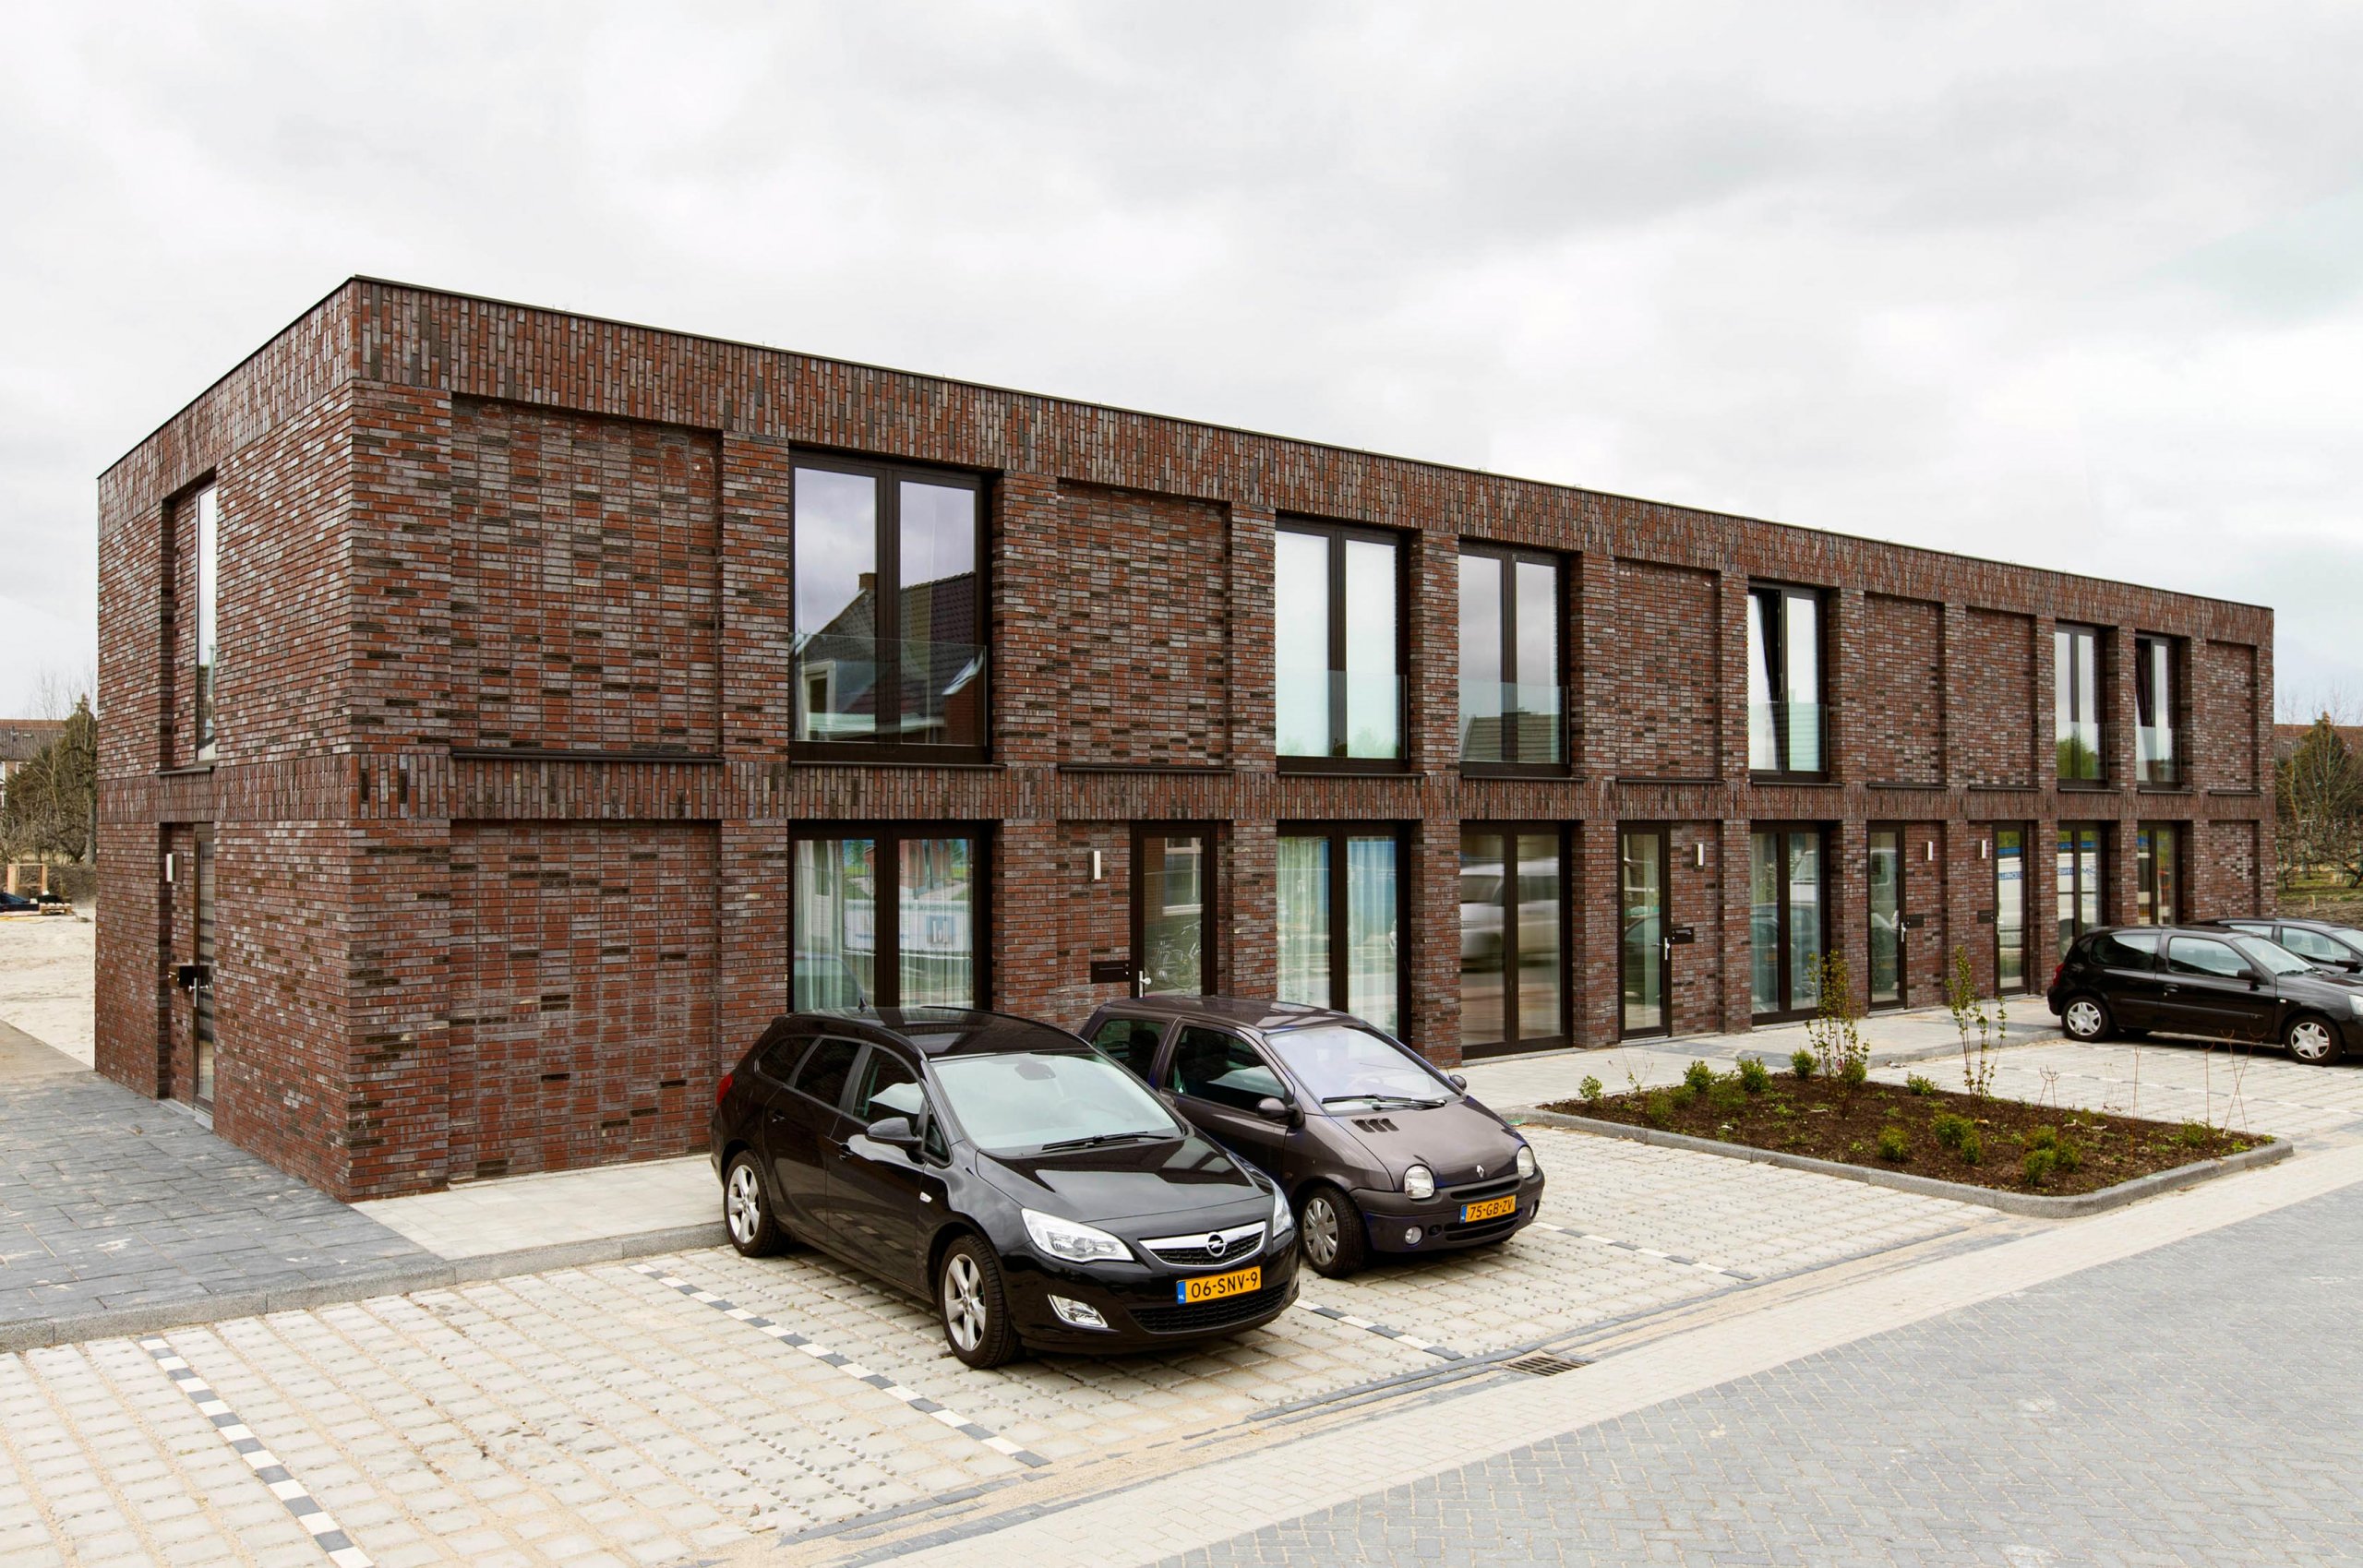 Exterieur van bakstenen woonblokken met starterswoningen in Schalkwijk, Provincie Utrecht